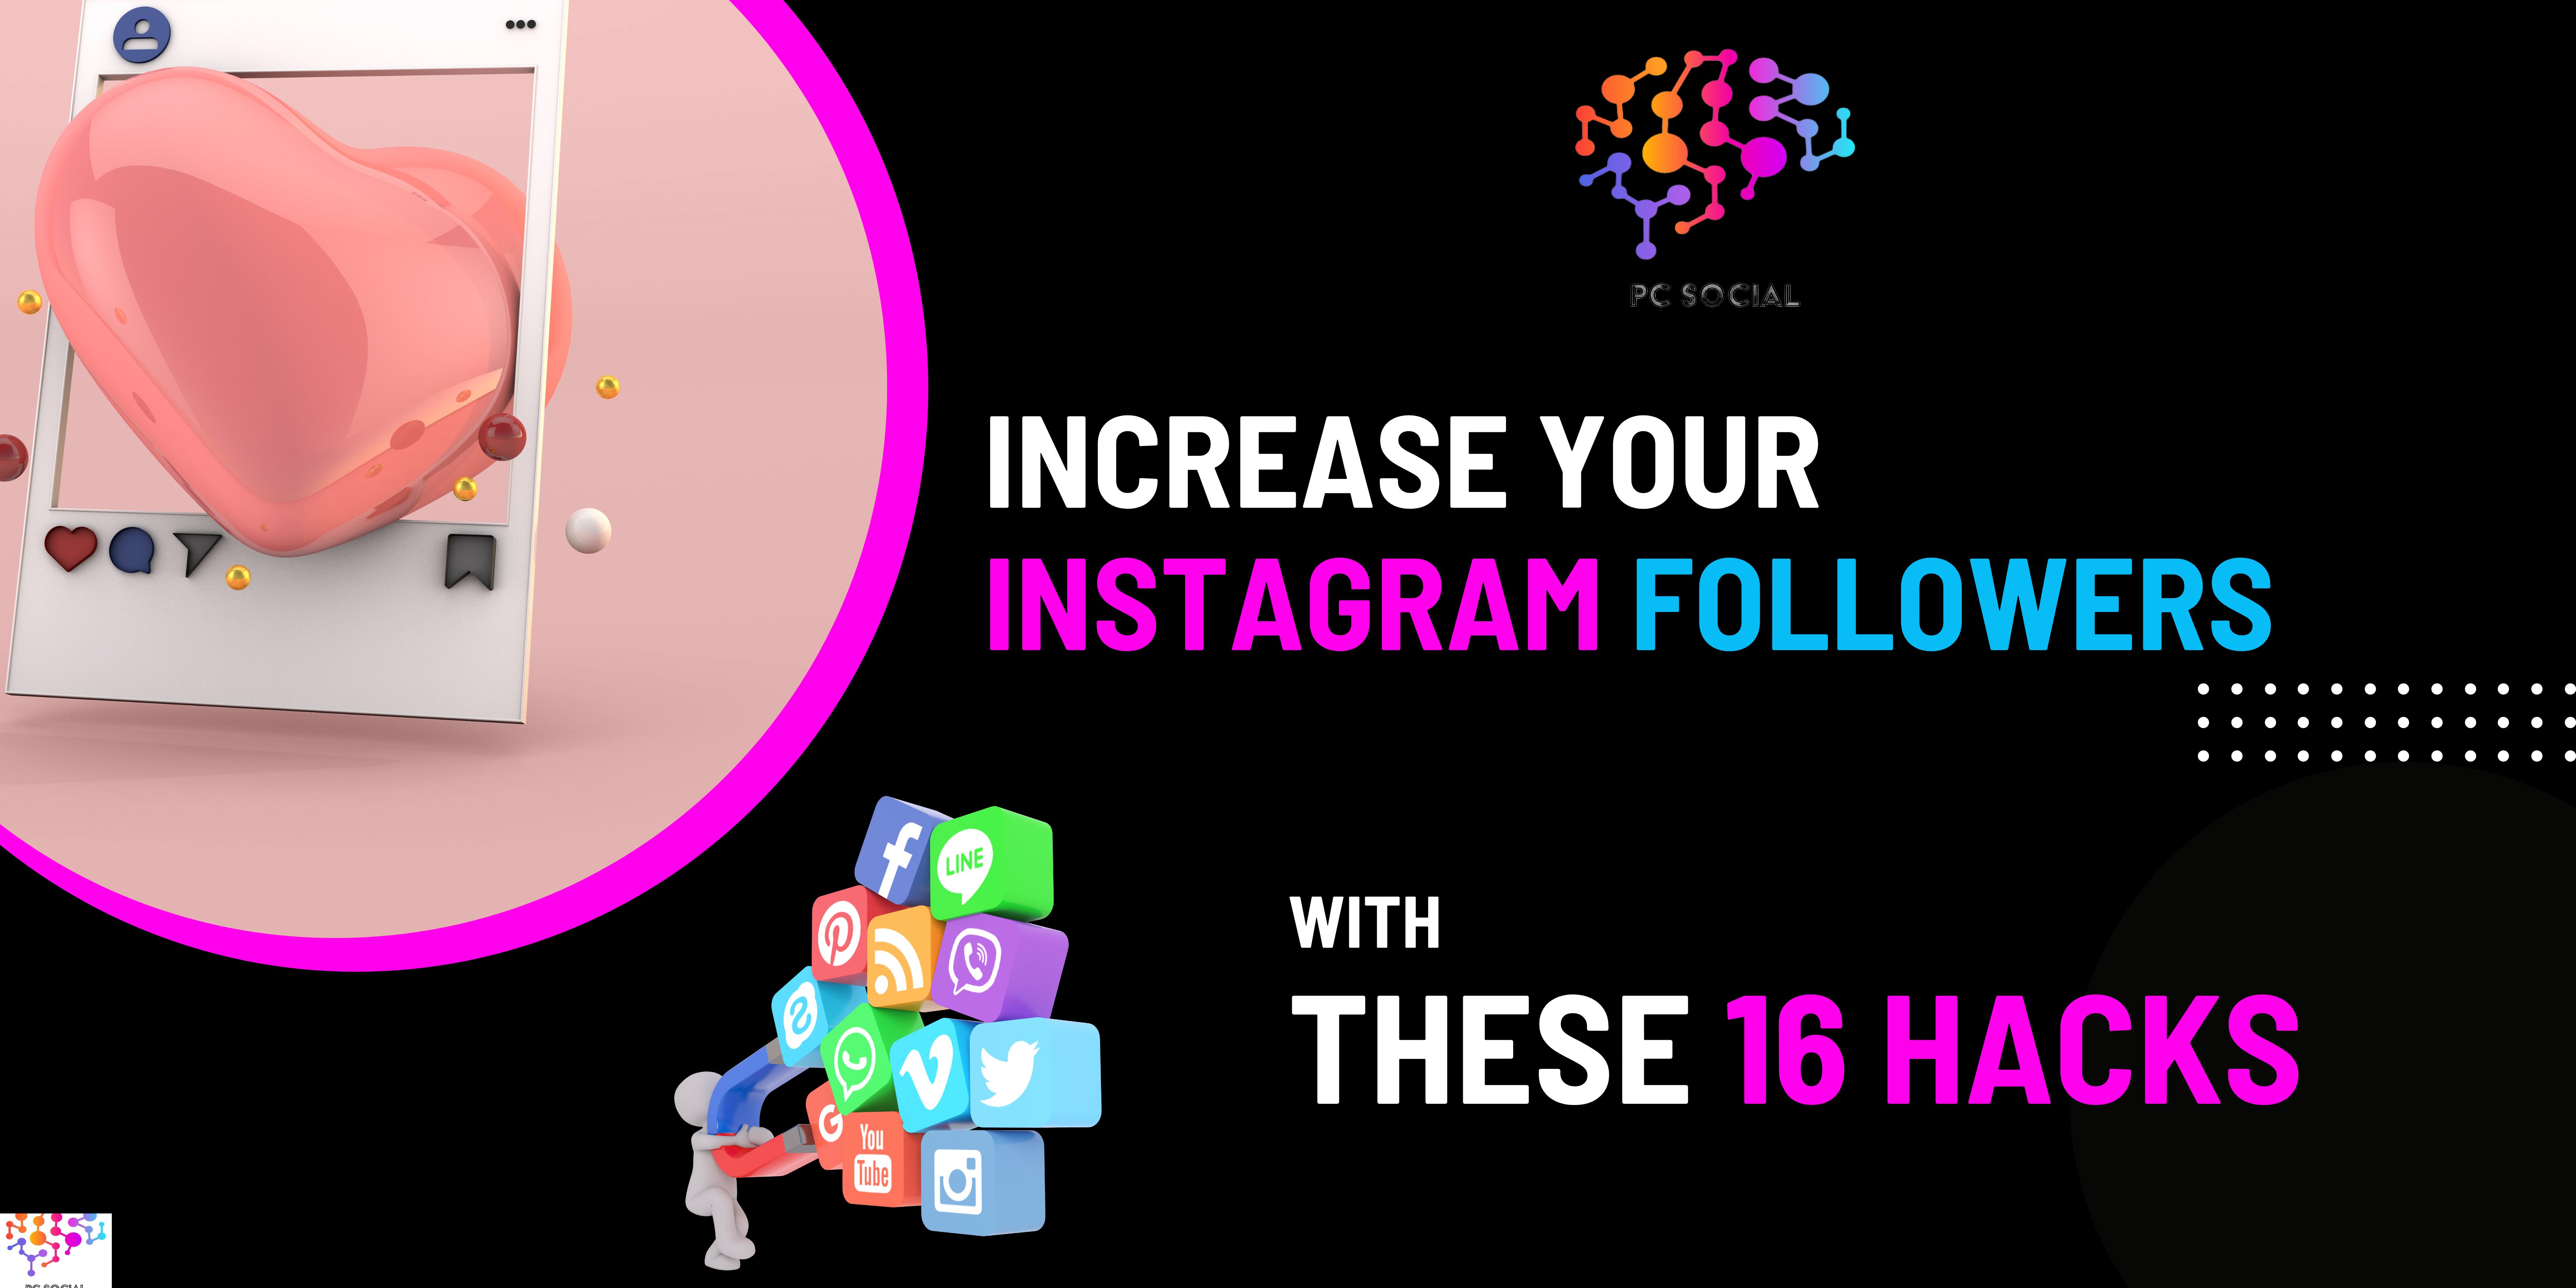 Instagram, Social Marketing, Data, Analytics, Smart Marketing, Insights, Tips, Growth Hacks